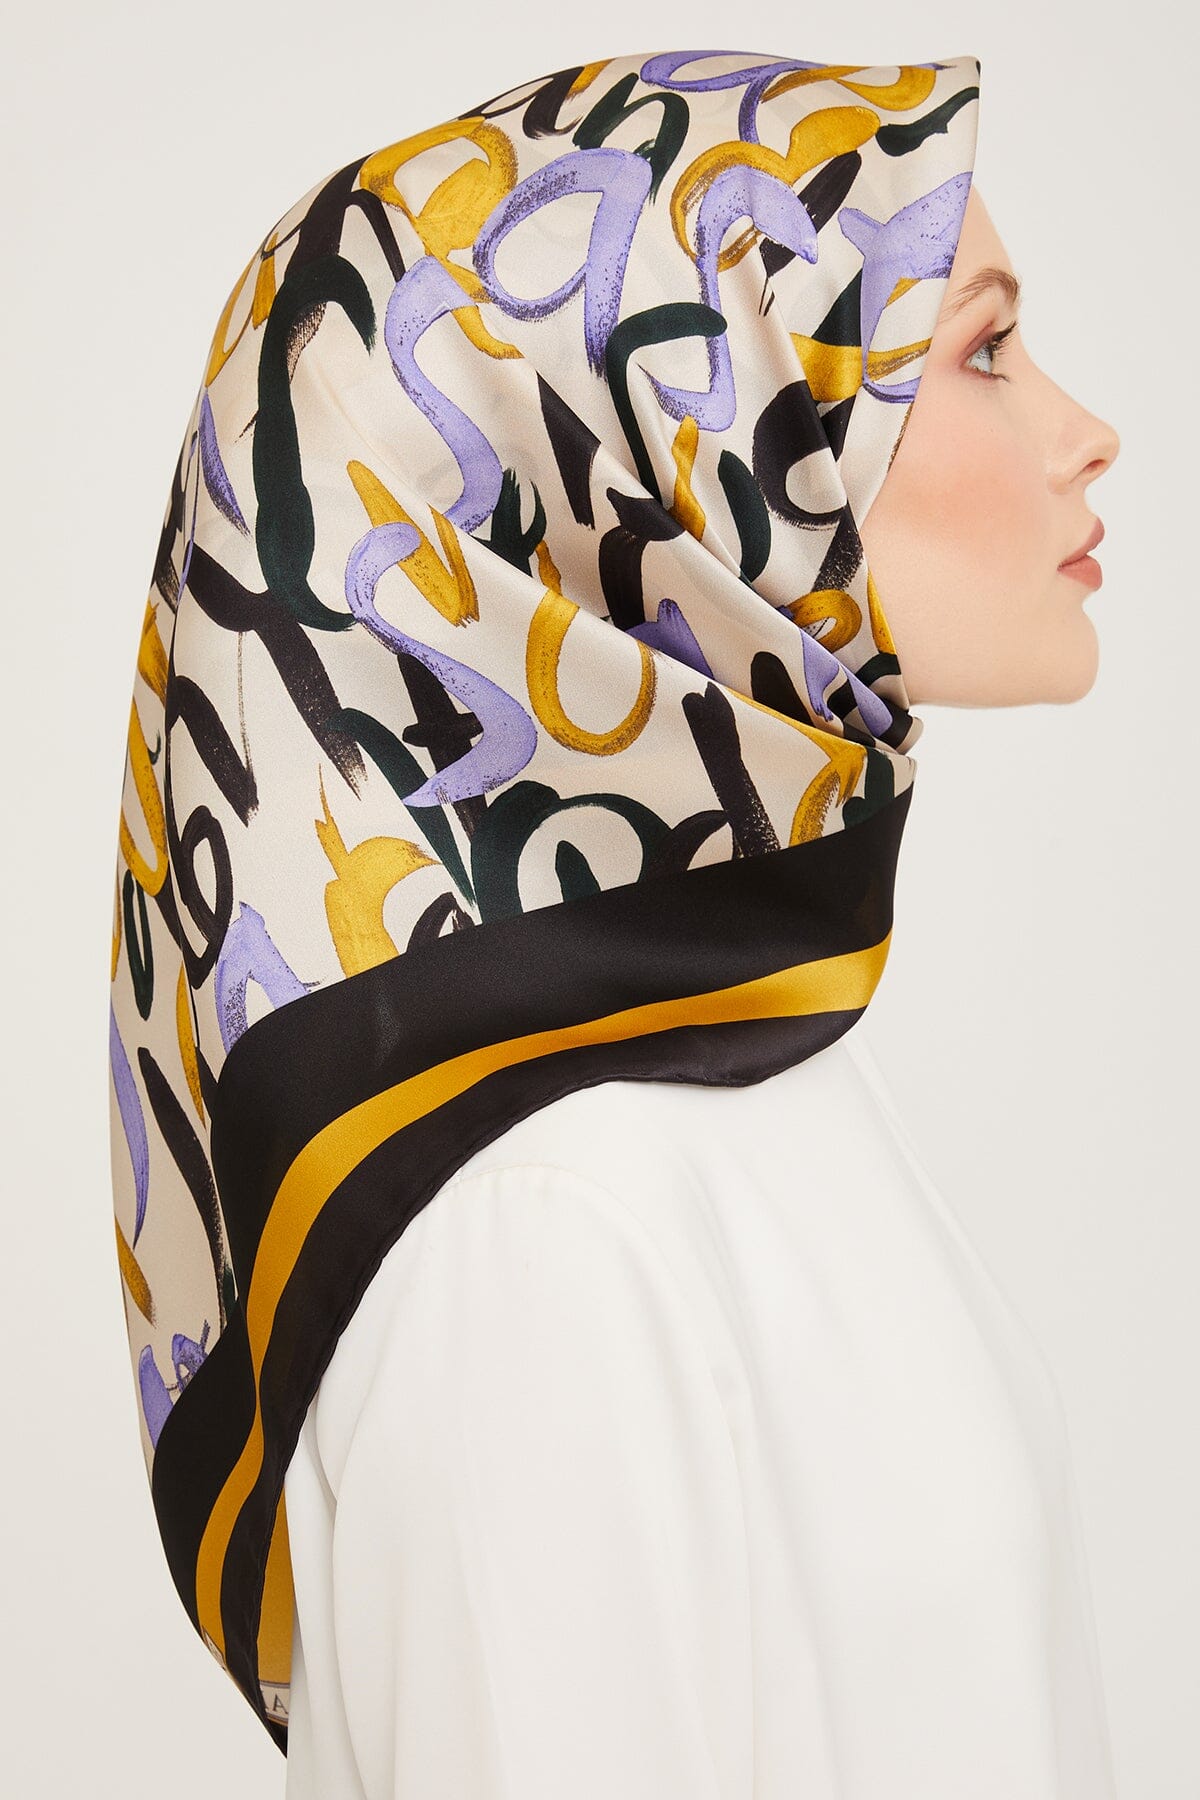 Armine Nudle Designer Silk Scarf #55 Silk Hijabs,Armine Armine 